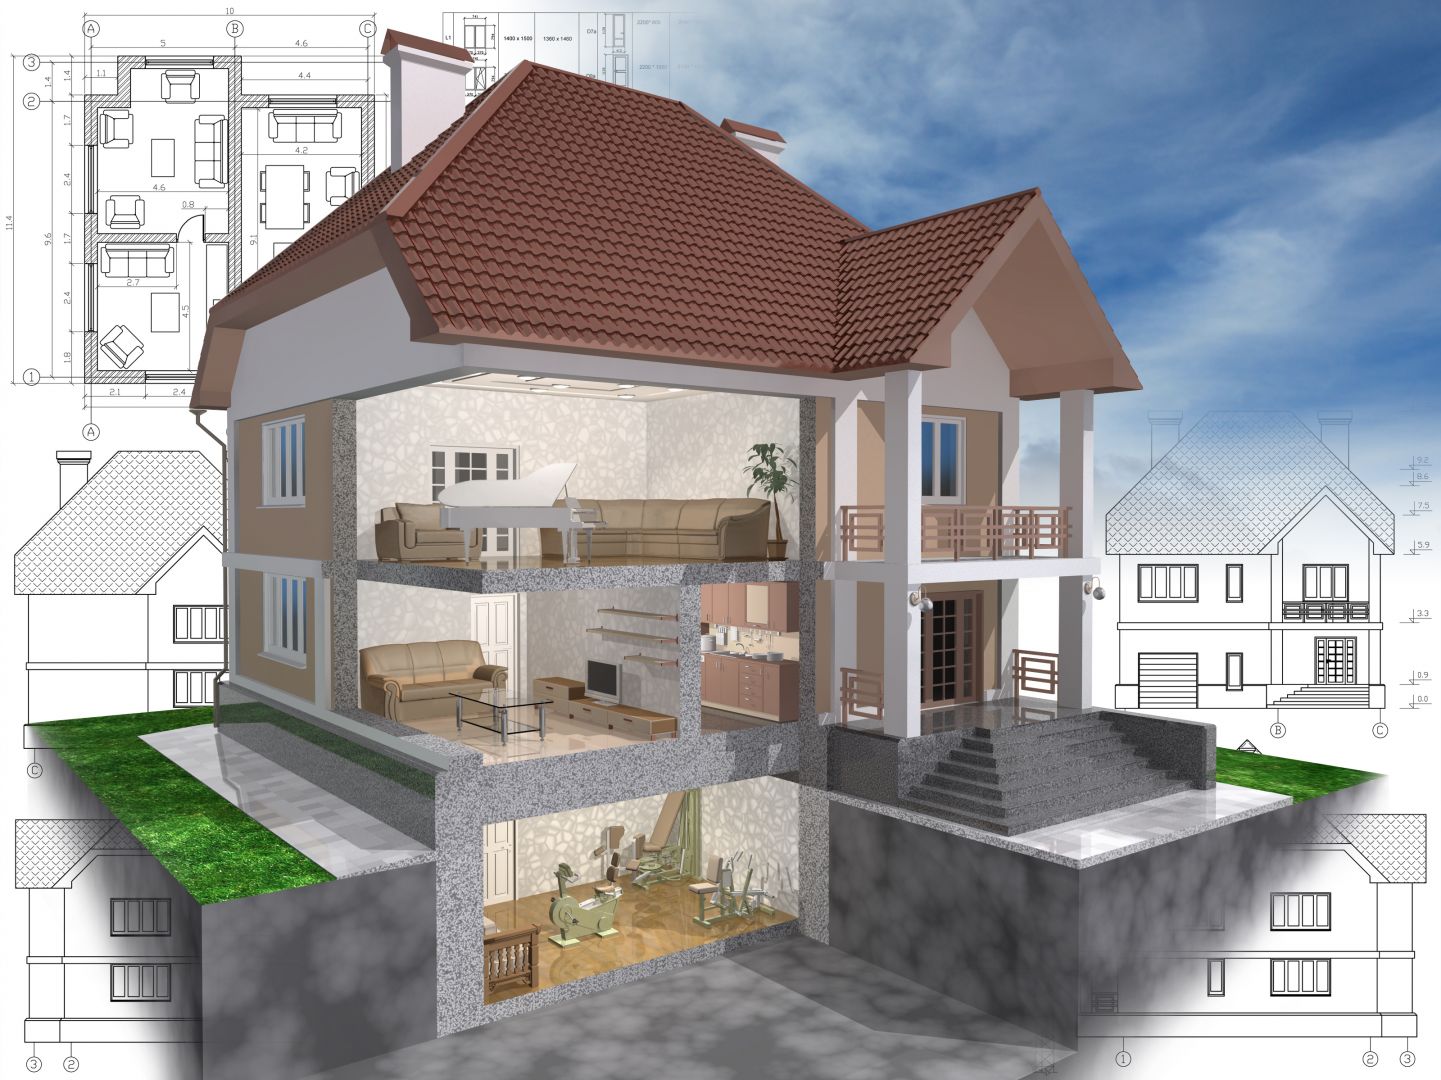 Poptávka na oprava 2 balkonů u rodinného domku (Balkony) - Liberec